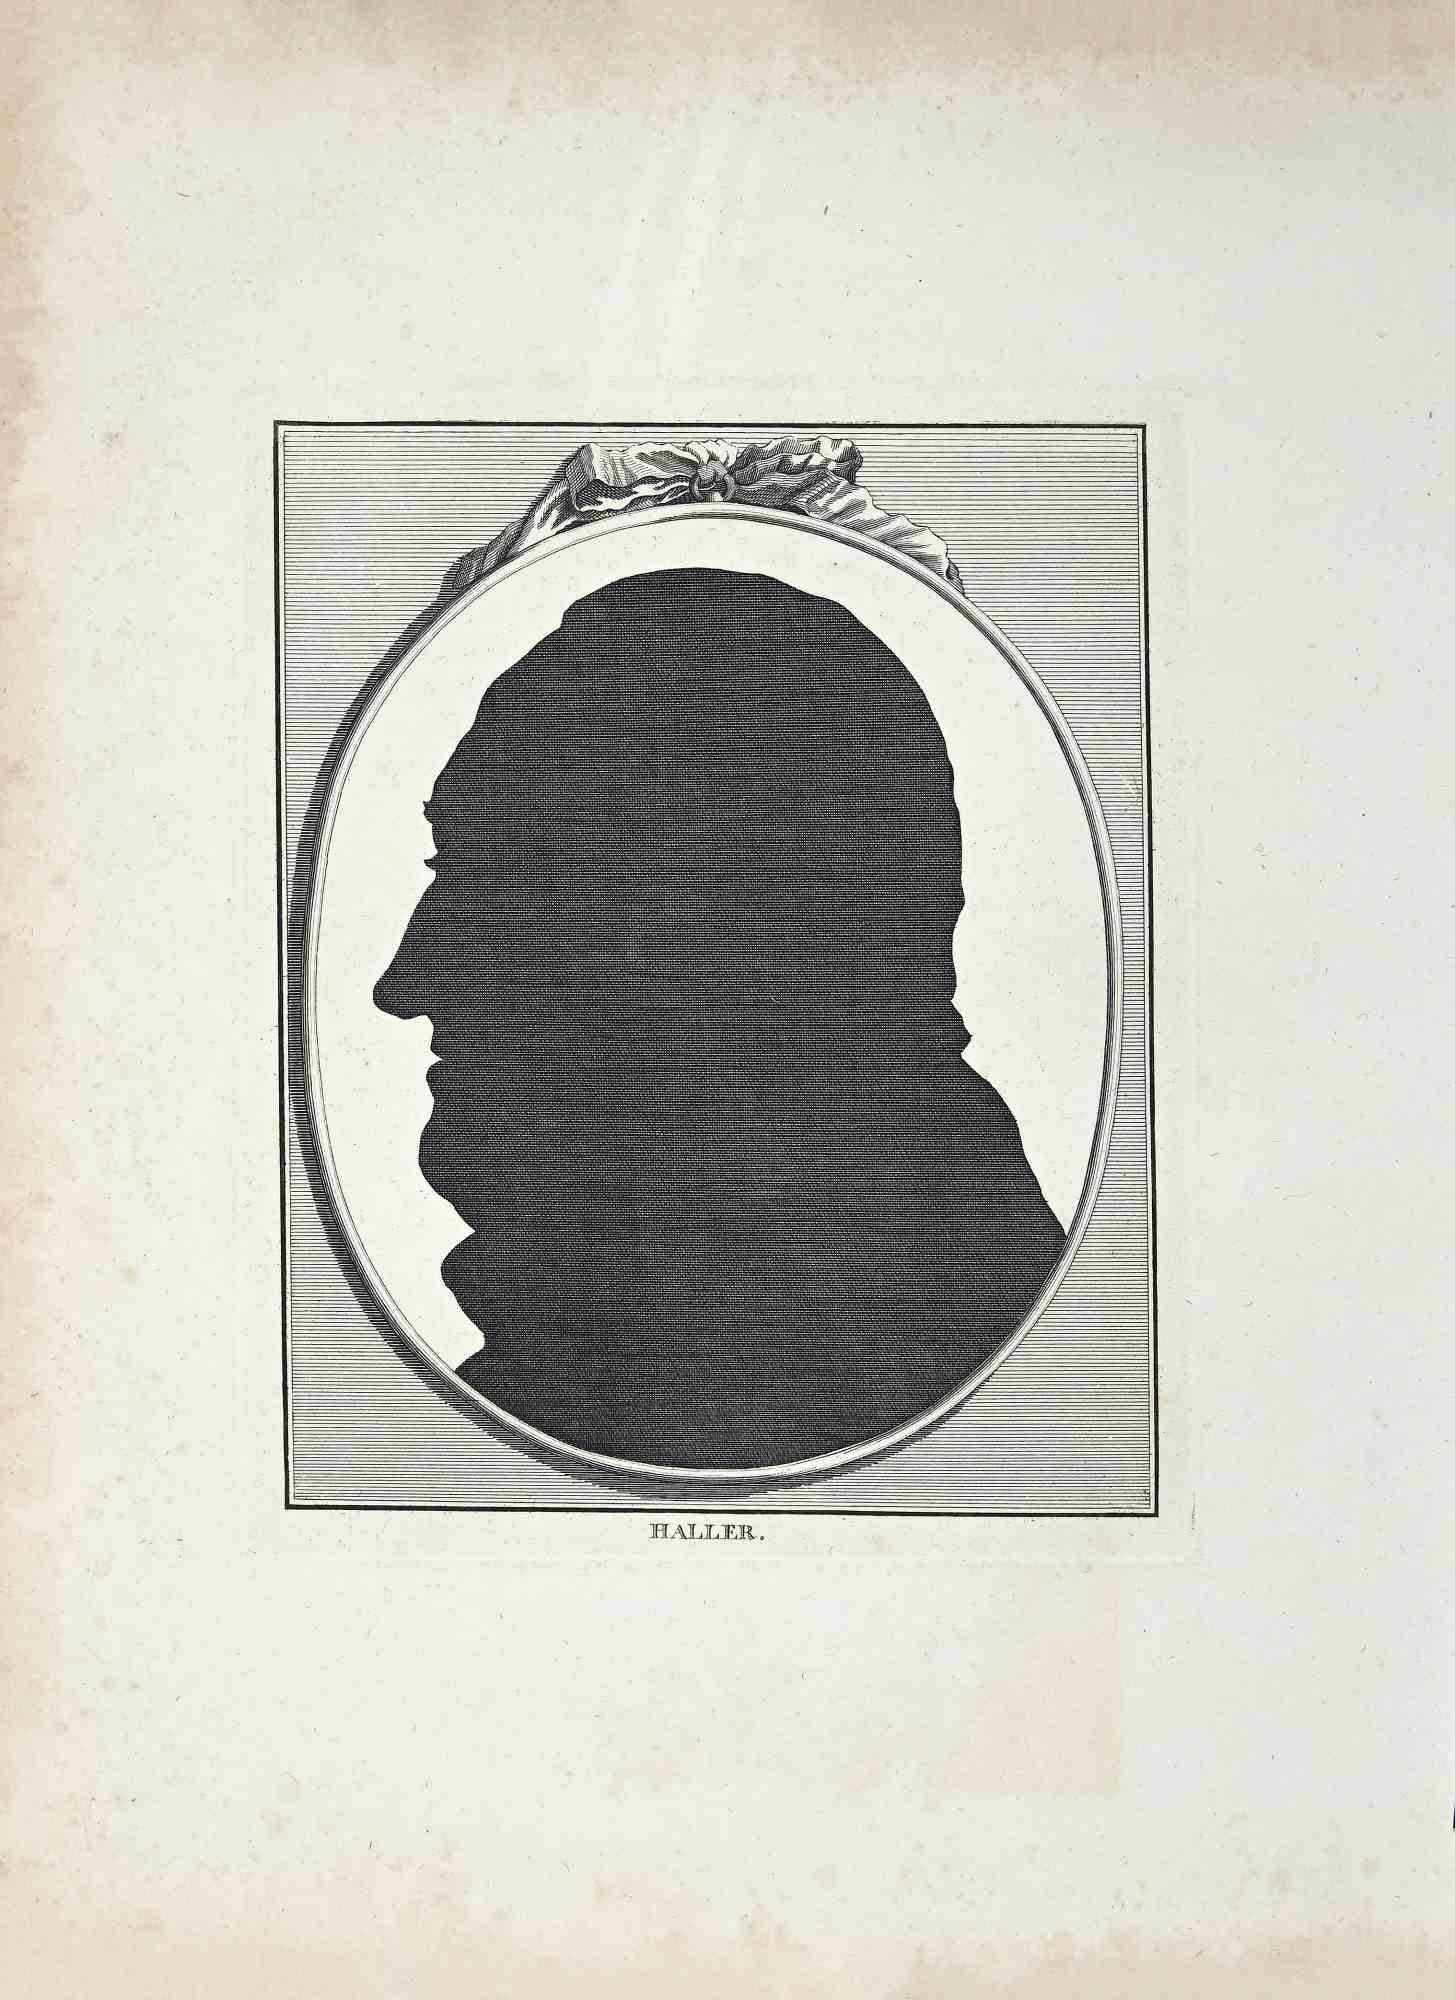 Silhouette ist ein Original-Kunstwerk von Thomas Holloway (1748 - 1827).

Original-Radierung von J.C. Lavater's "Essays on Physiognomy, Designed to promote the Knowledge and the Love of Mankind", London, Bensley, 1810. 

Dieses Kunstwerk stellt die